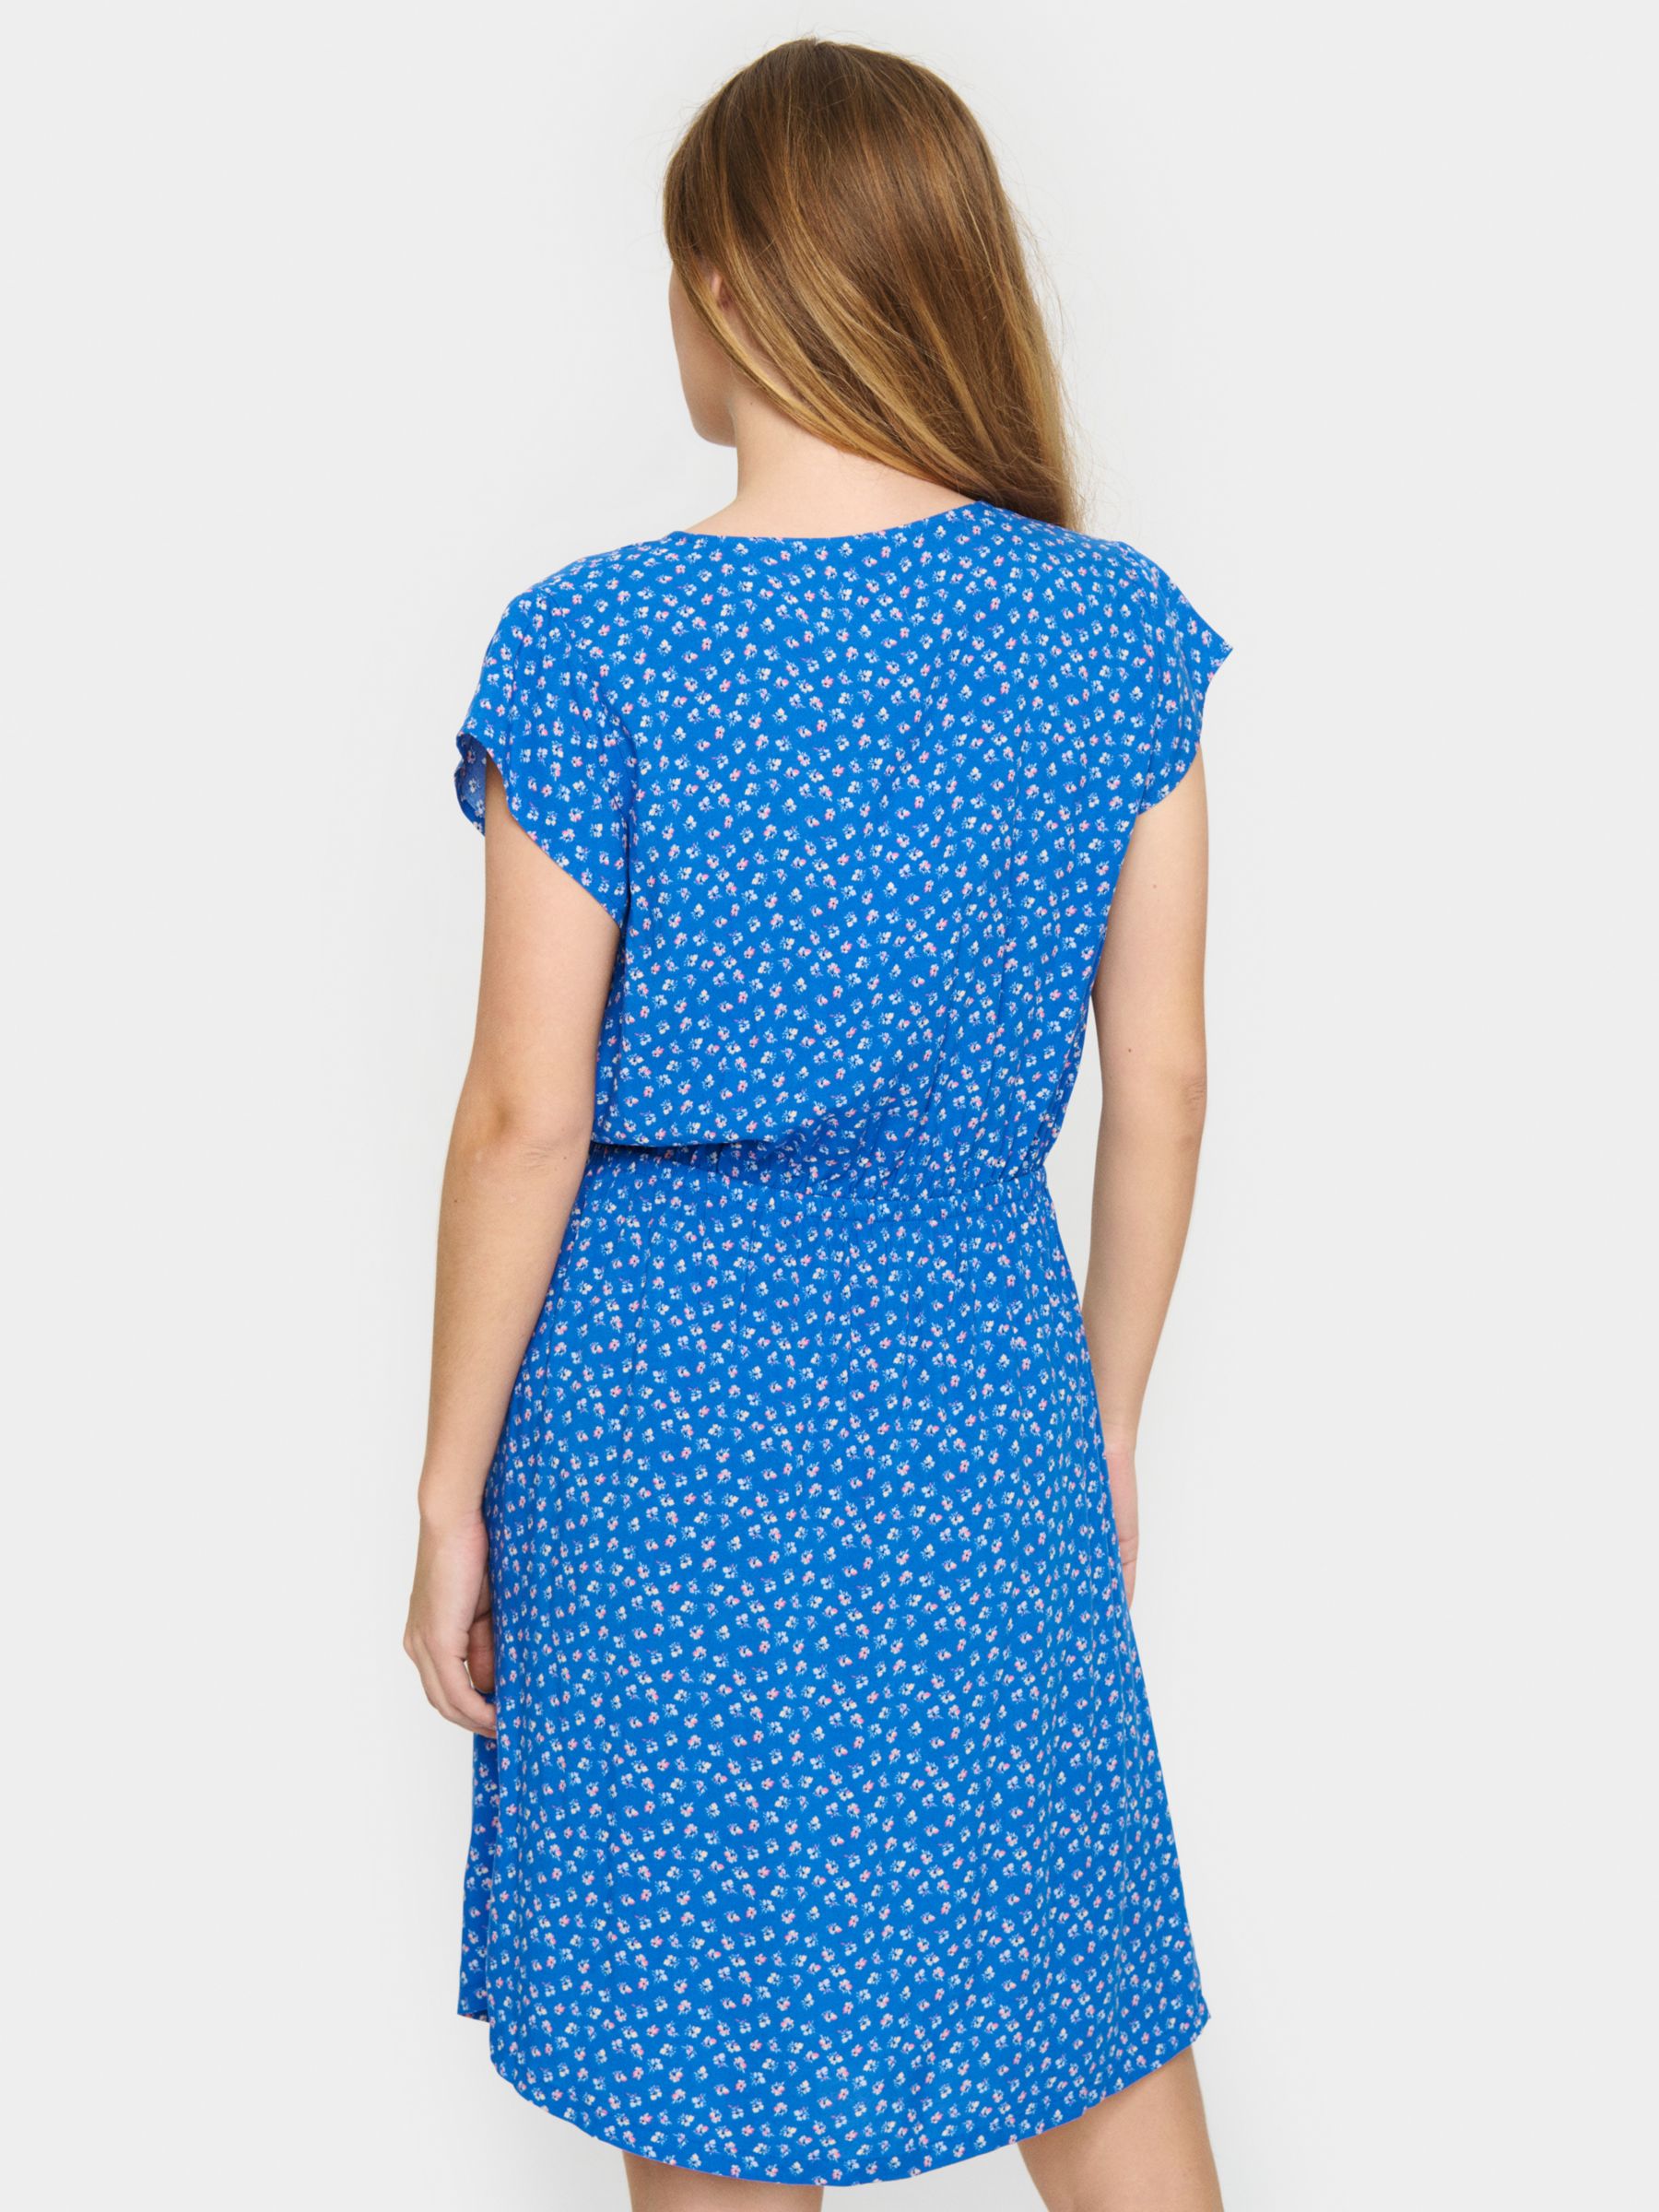 Saint Tropez Edua Ditsy Floral Print Knee Length Dress, Blue/Multi, XS